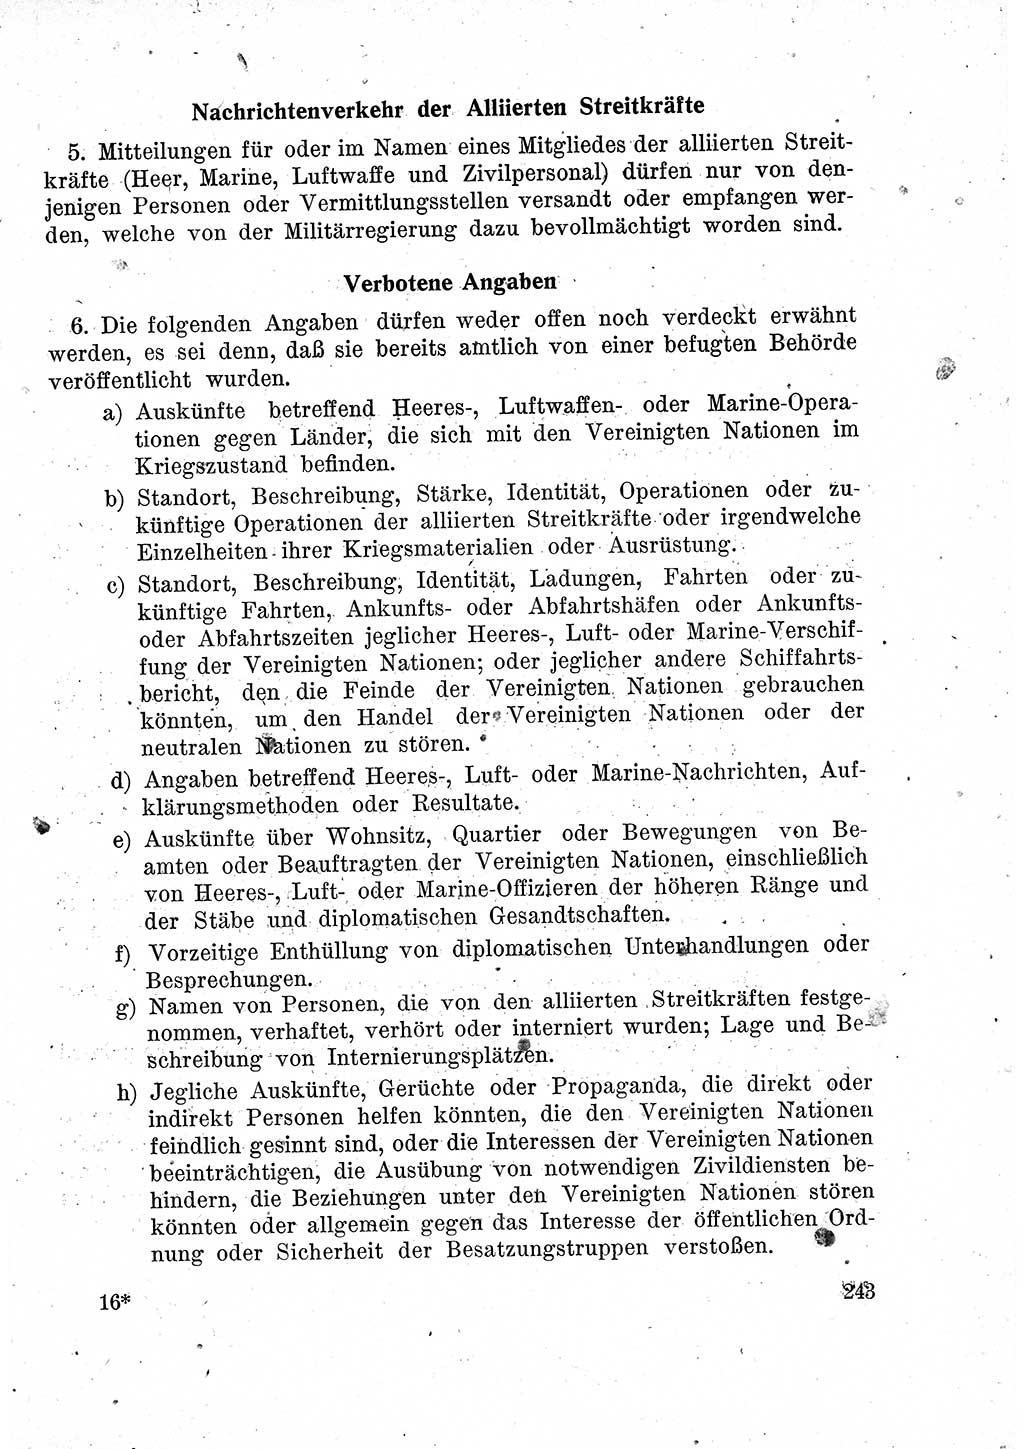 Das Recht der Besatzungsmacht (Deutschland), Proklamationen, Deklerationen, Verordnungen, Gesetze und Bekanntmachungen 1947, Seite 243 (R. Bes. Dtl. 1947, S. 243)